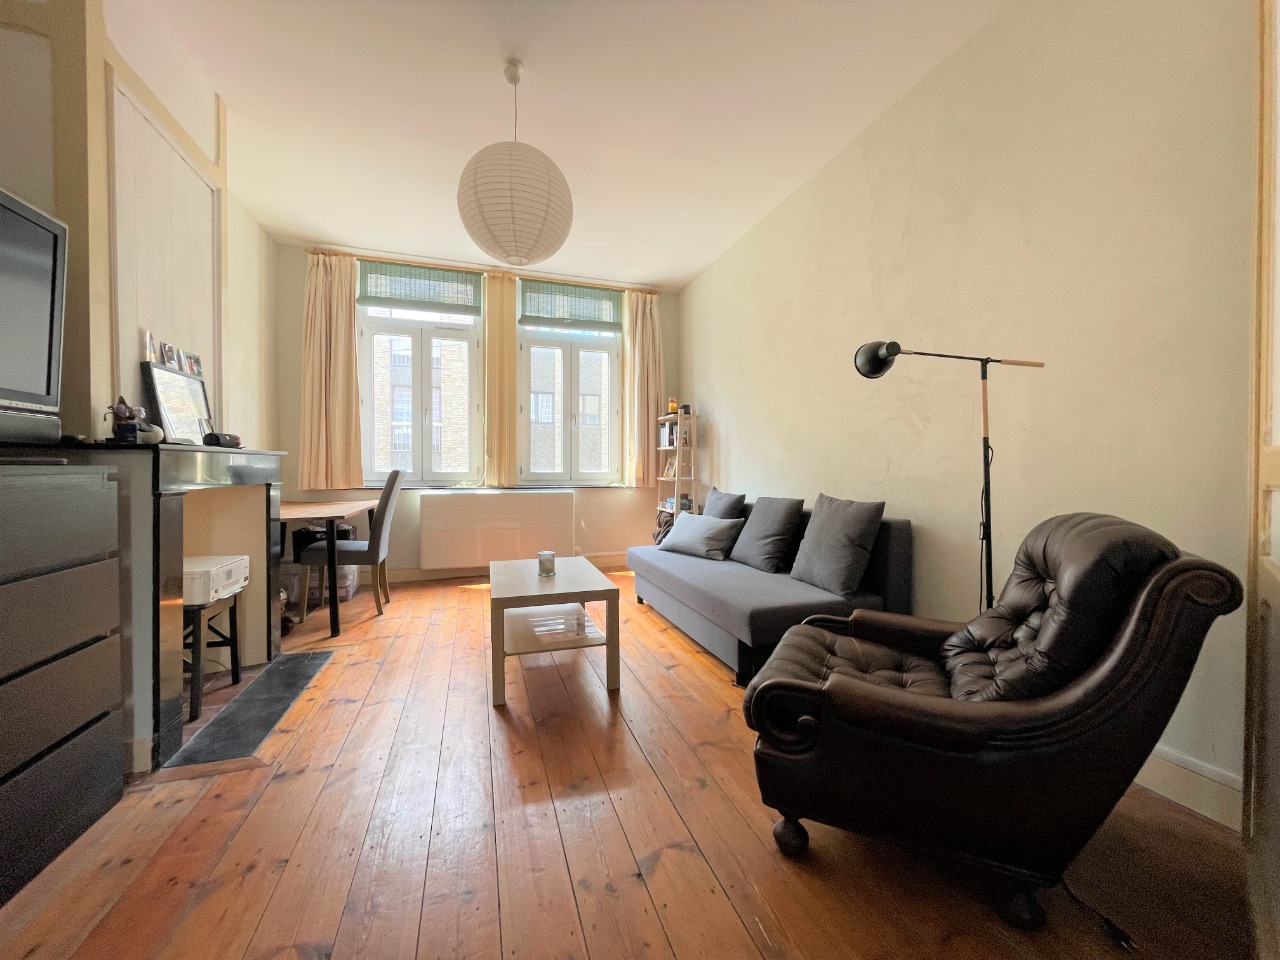 Vente appartement 59000 Lille - Quartier Vauban - Grand 2 pièces